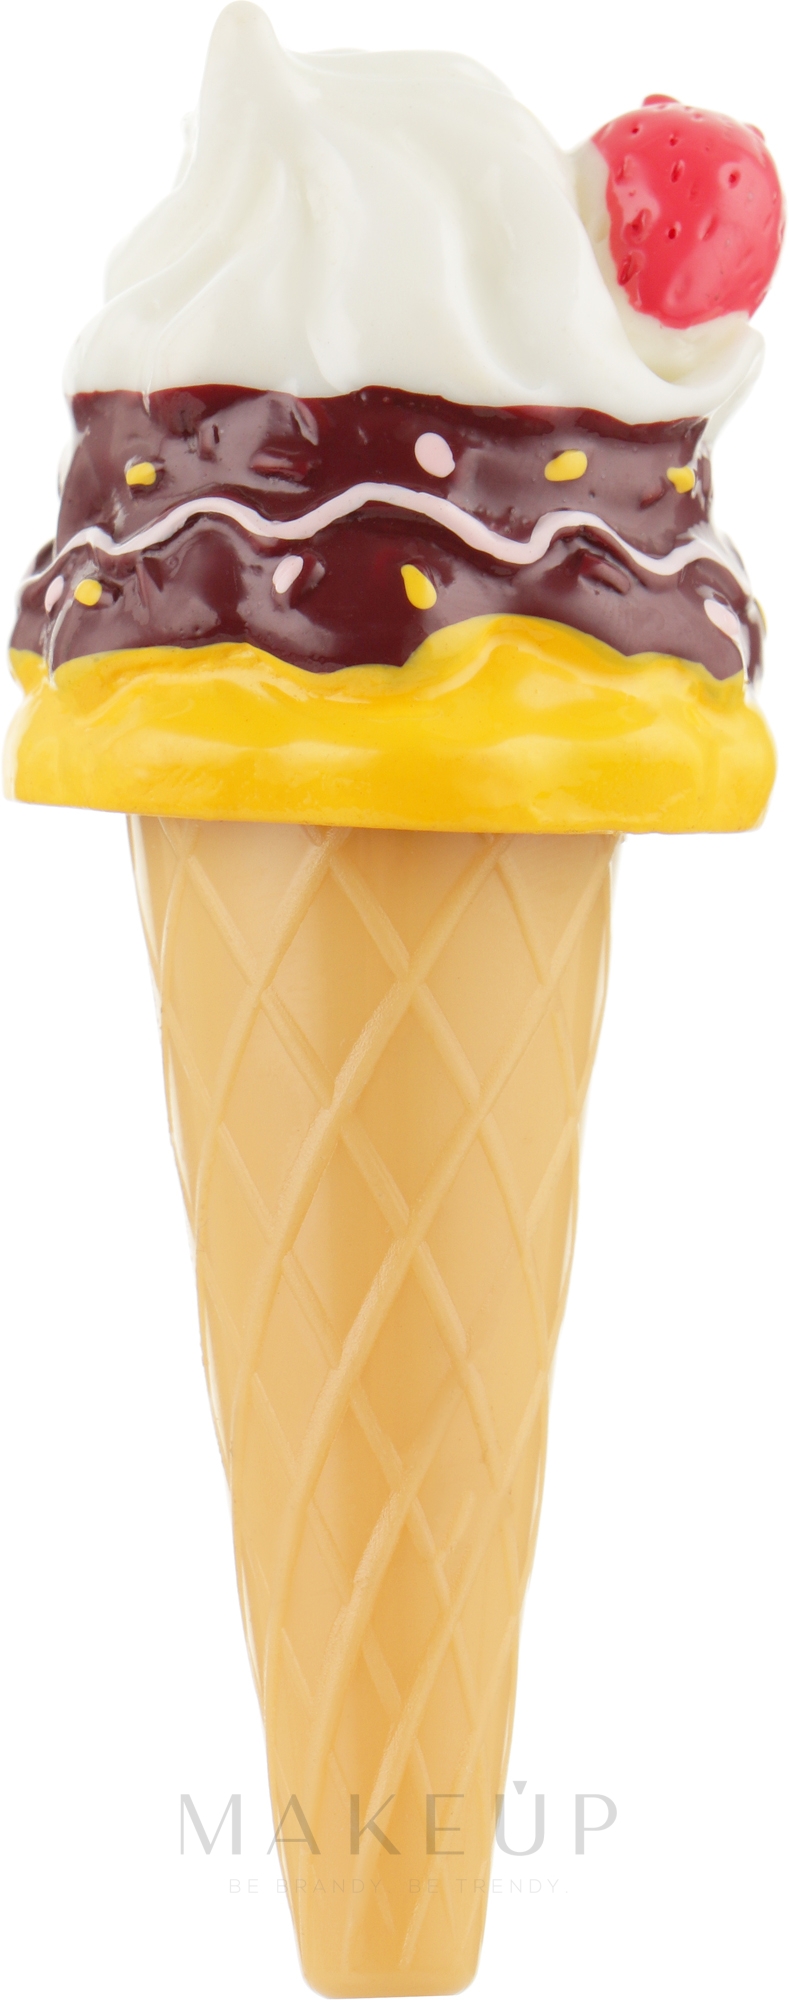 Lippenbalsam in Form von einer Eistüte mit Kokosnuss-Geschmack - Martinelia Lip Balm Ice Cream Coconut — Bild 3.5 g